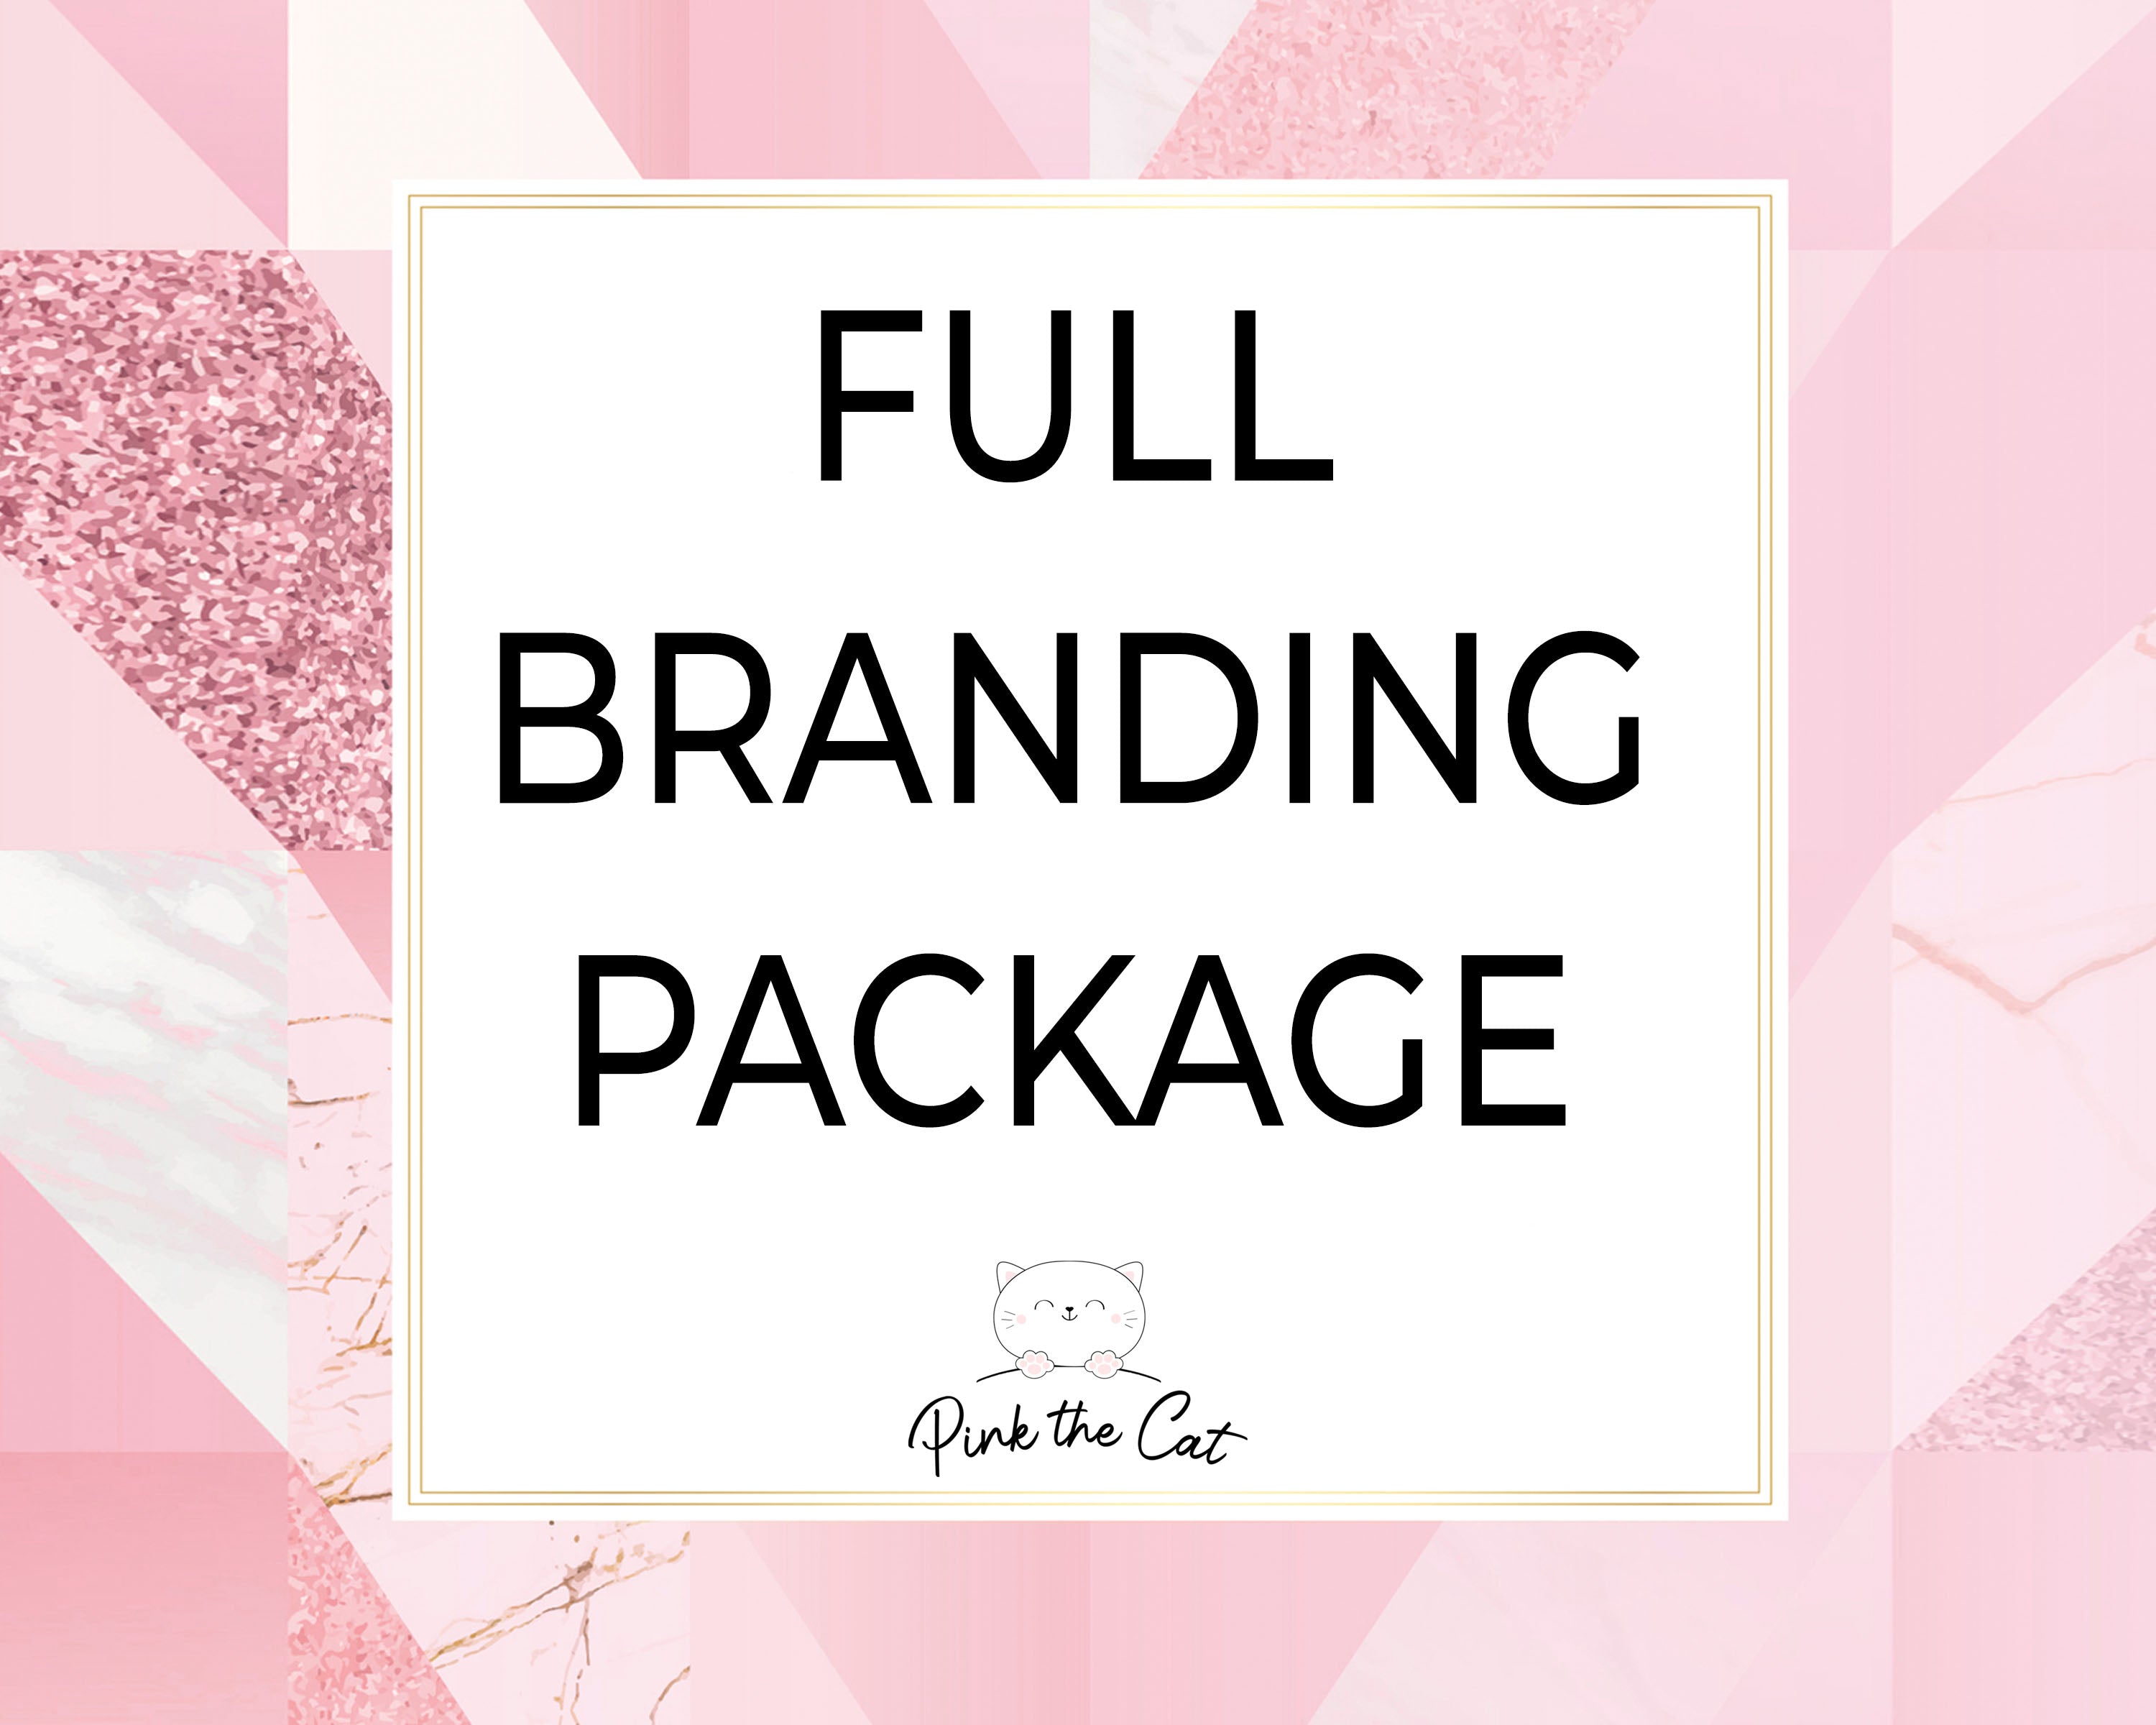 Full branding package design